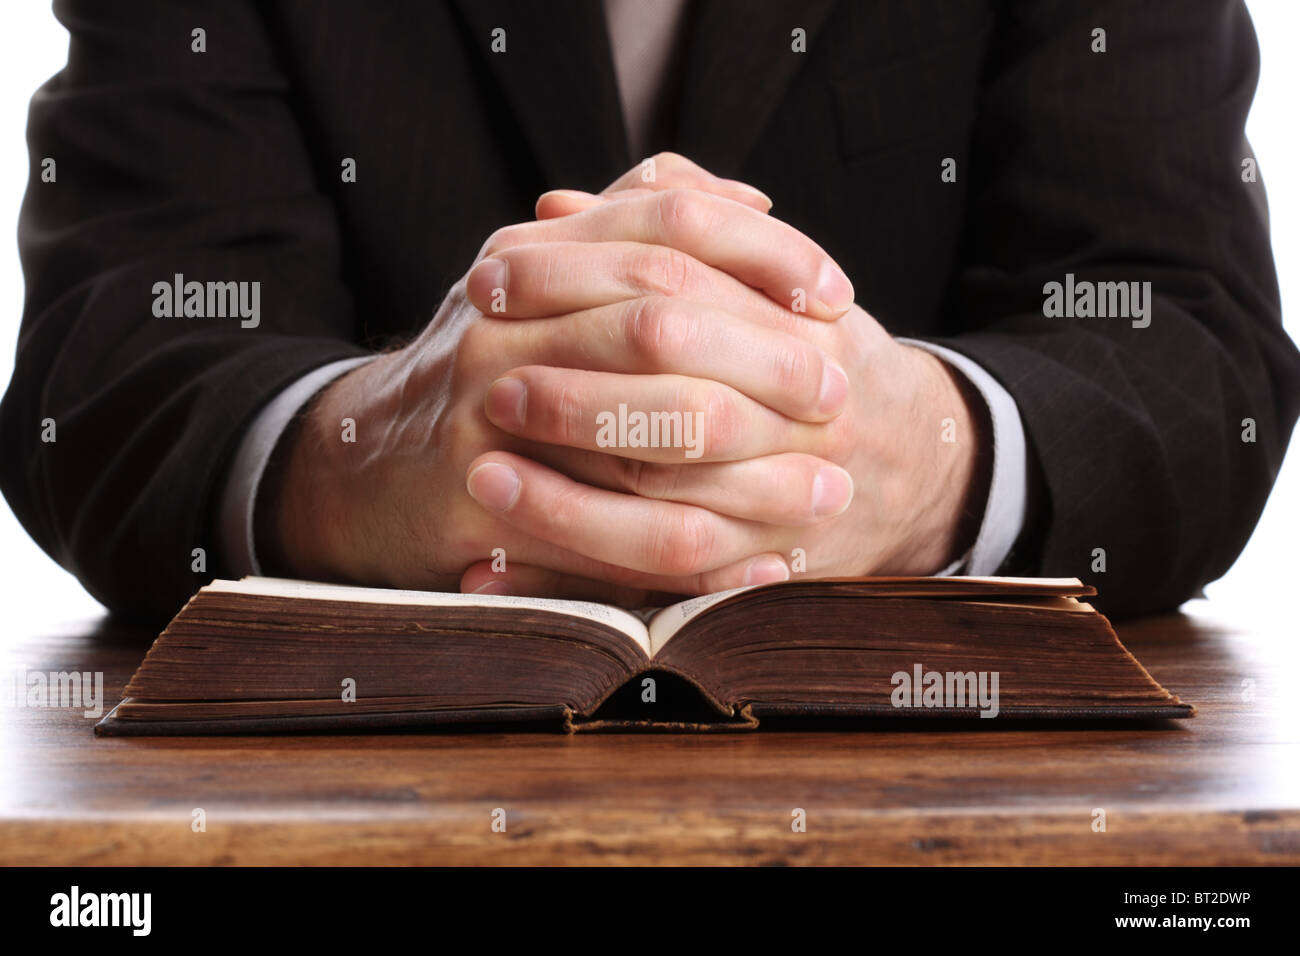 Pregando le mani su una Bibbia aperta Foto Stock